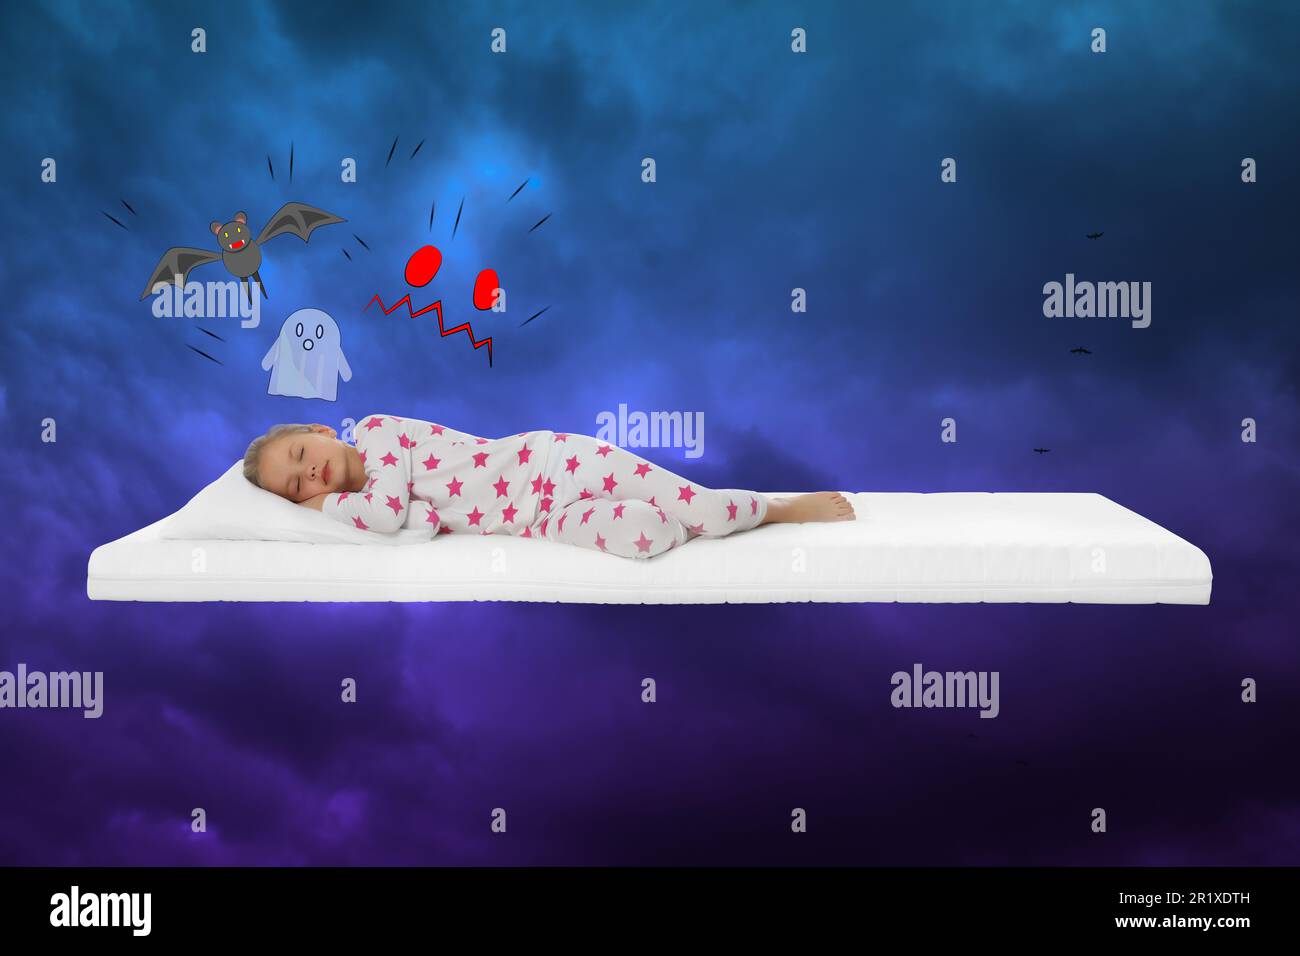 Albtraumkonzept. Ein kleines Mädchen, das auf einer Matratze am Himmel schläft, mit starken Regenwolken Stockfoto